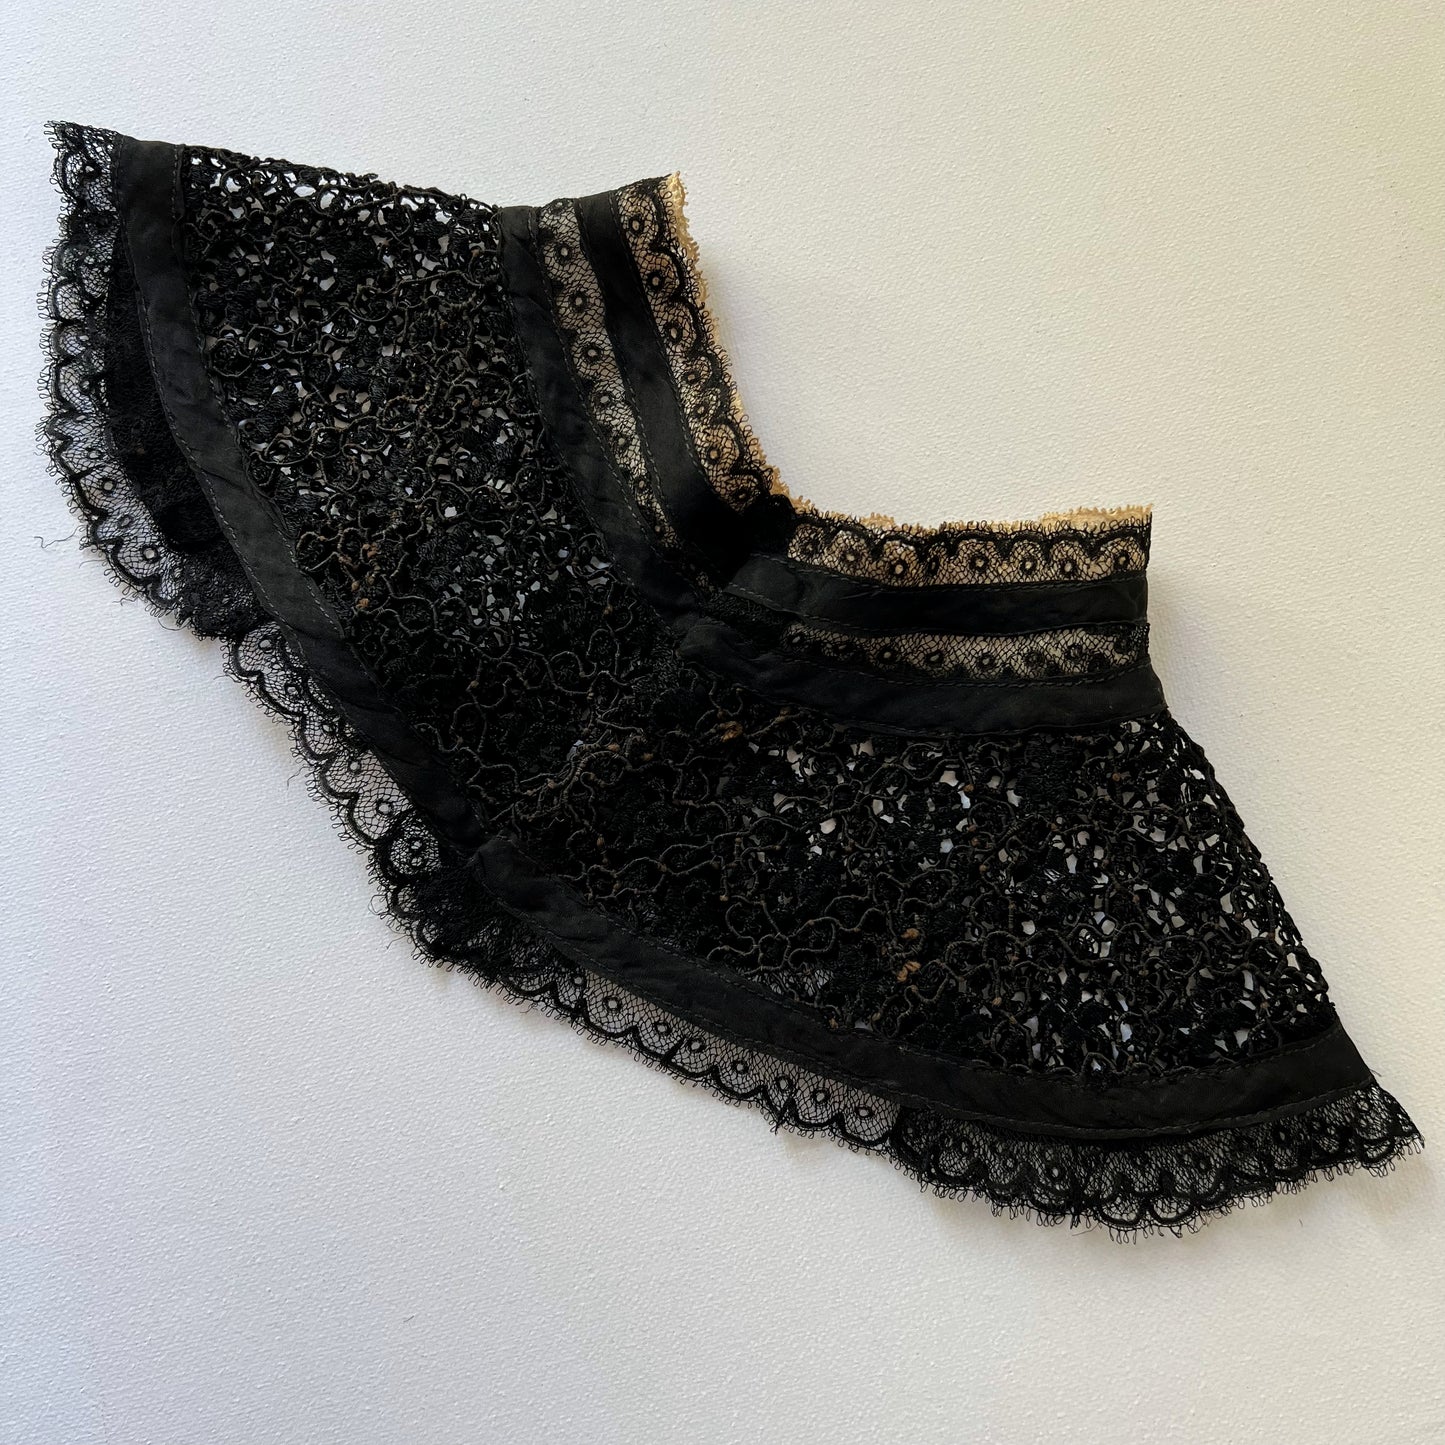 【Antique】France - 1890-1900s Black Lace Collar